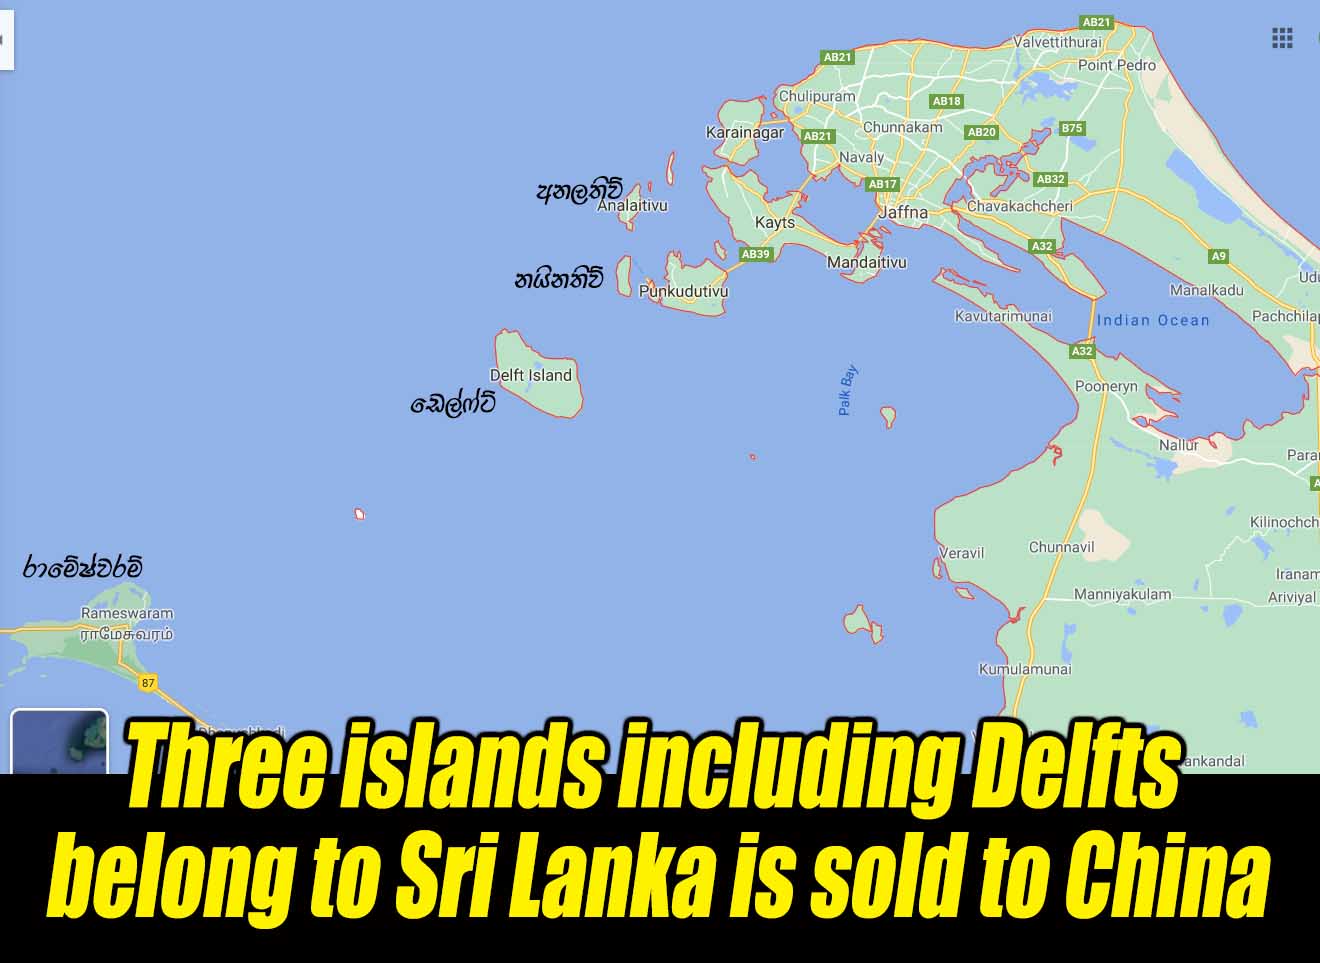 LEN -   Three islands including Delfts belong